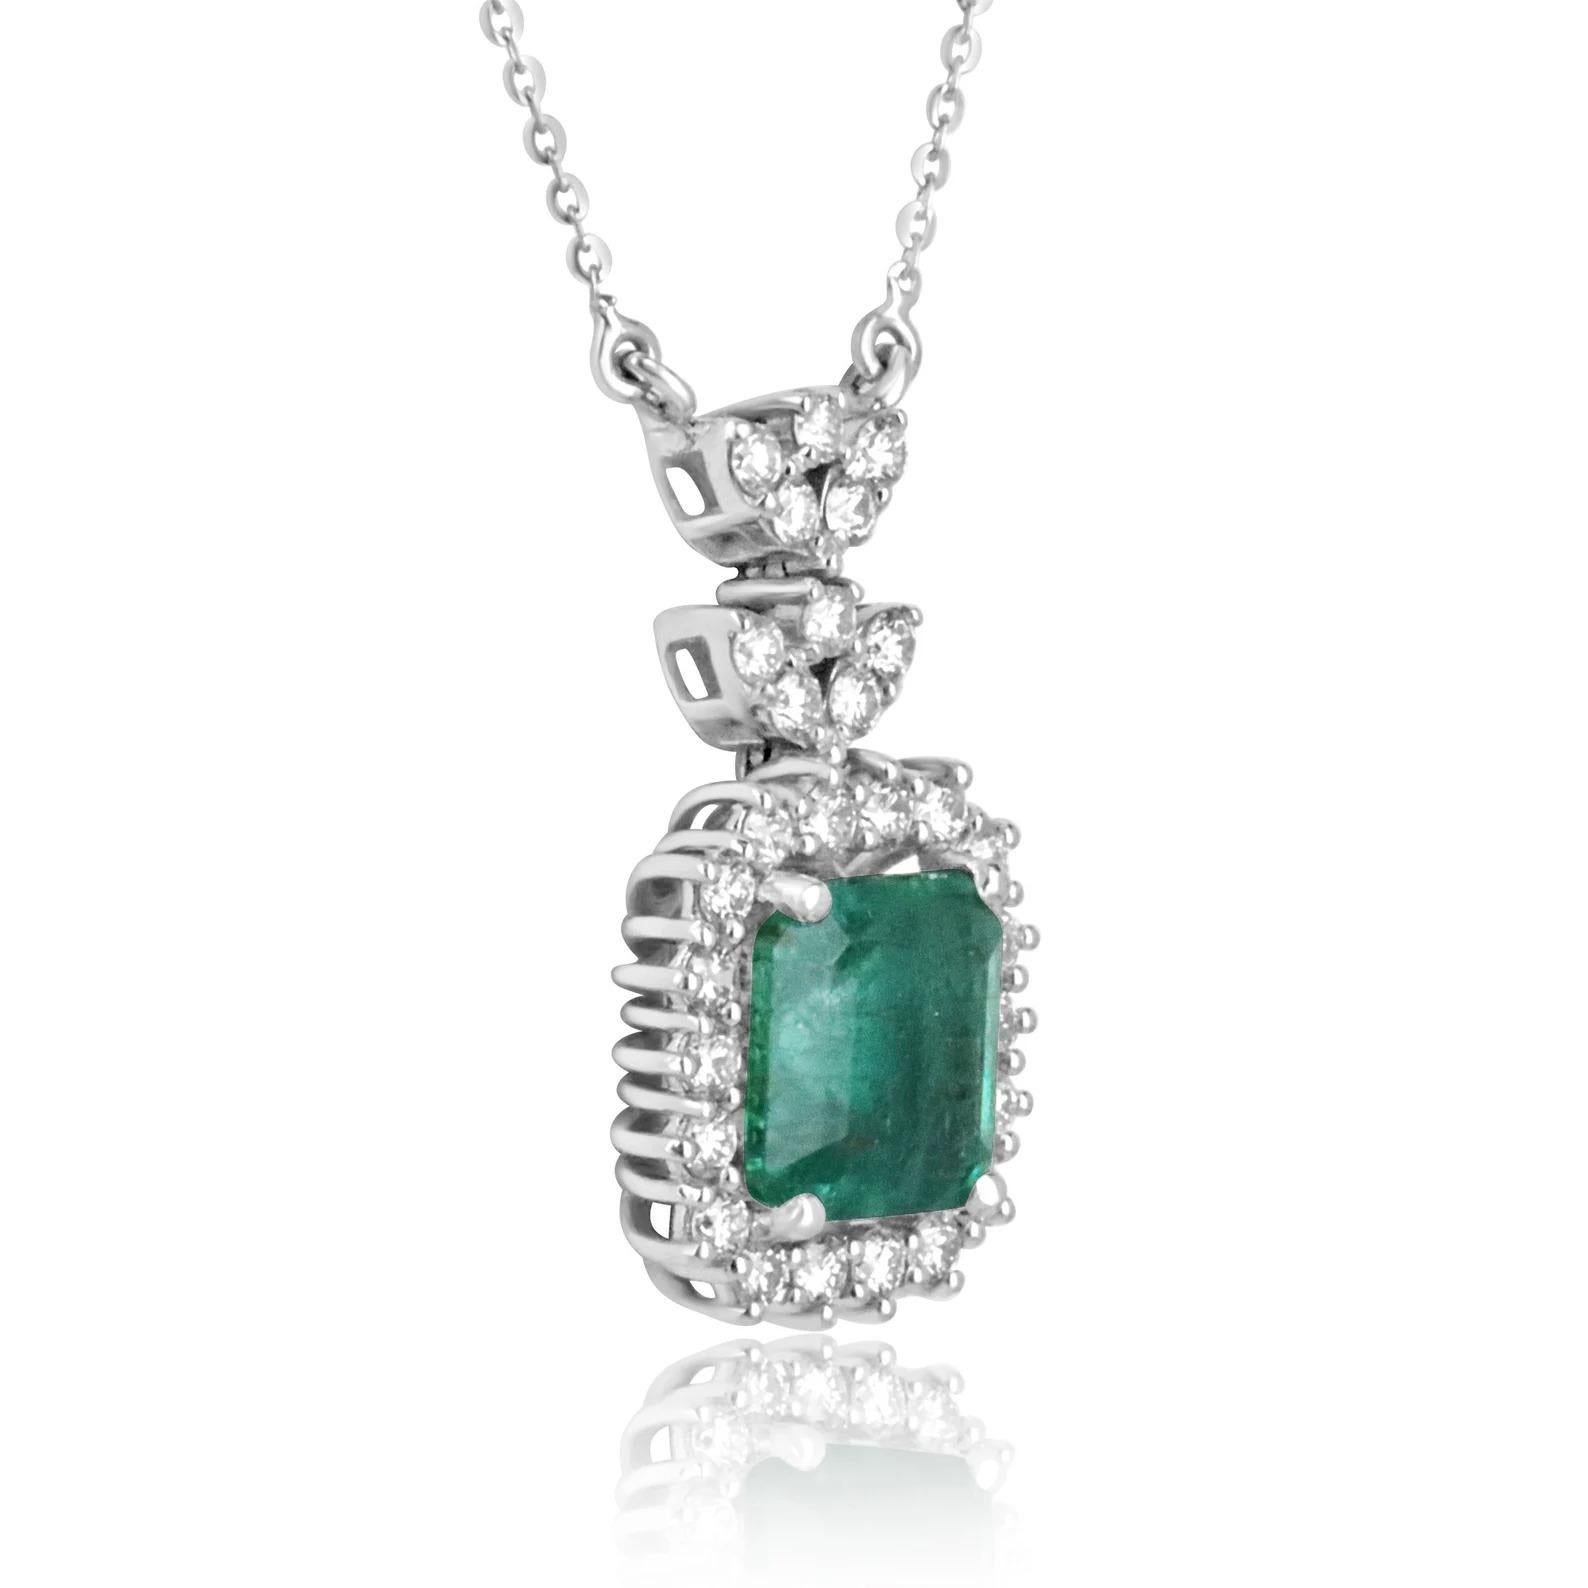 Dieses besondere und intime Stück ist ein bemerkenswertes Collier aus natürlichen Smaragden und Diamanten. Der Mittelstein ist ein hinreißender, 4,58 Karat großer, natürlicher Smaragd im Asscher-Schliff mit einer tiefen, mittel-dunkelgrünen Farbe